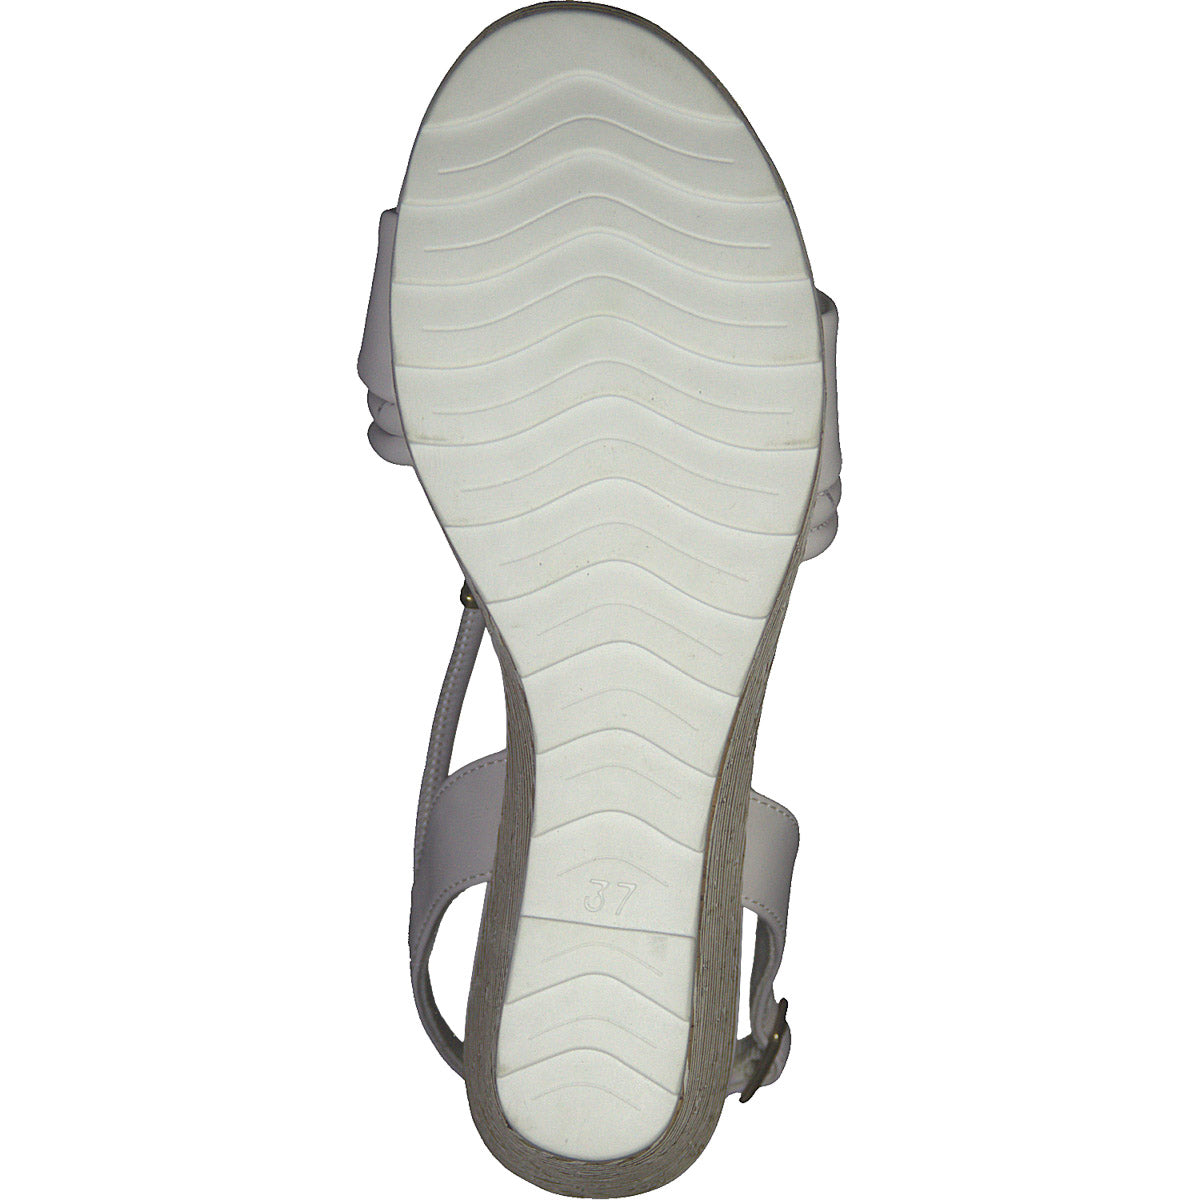 Summer Trendy White Wedge Sandal